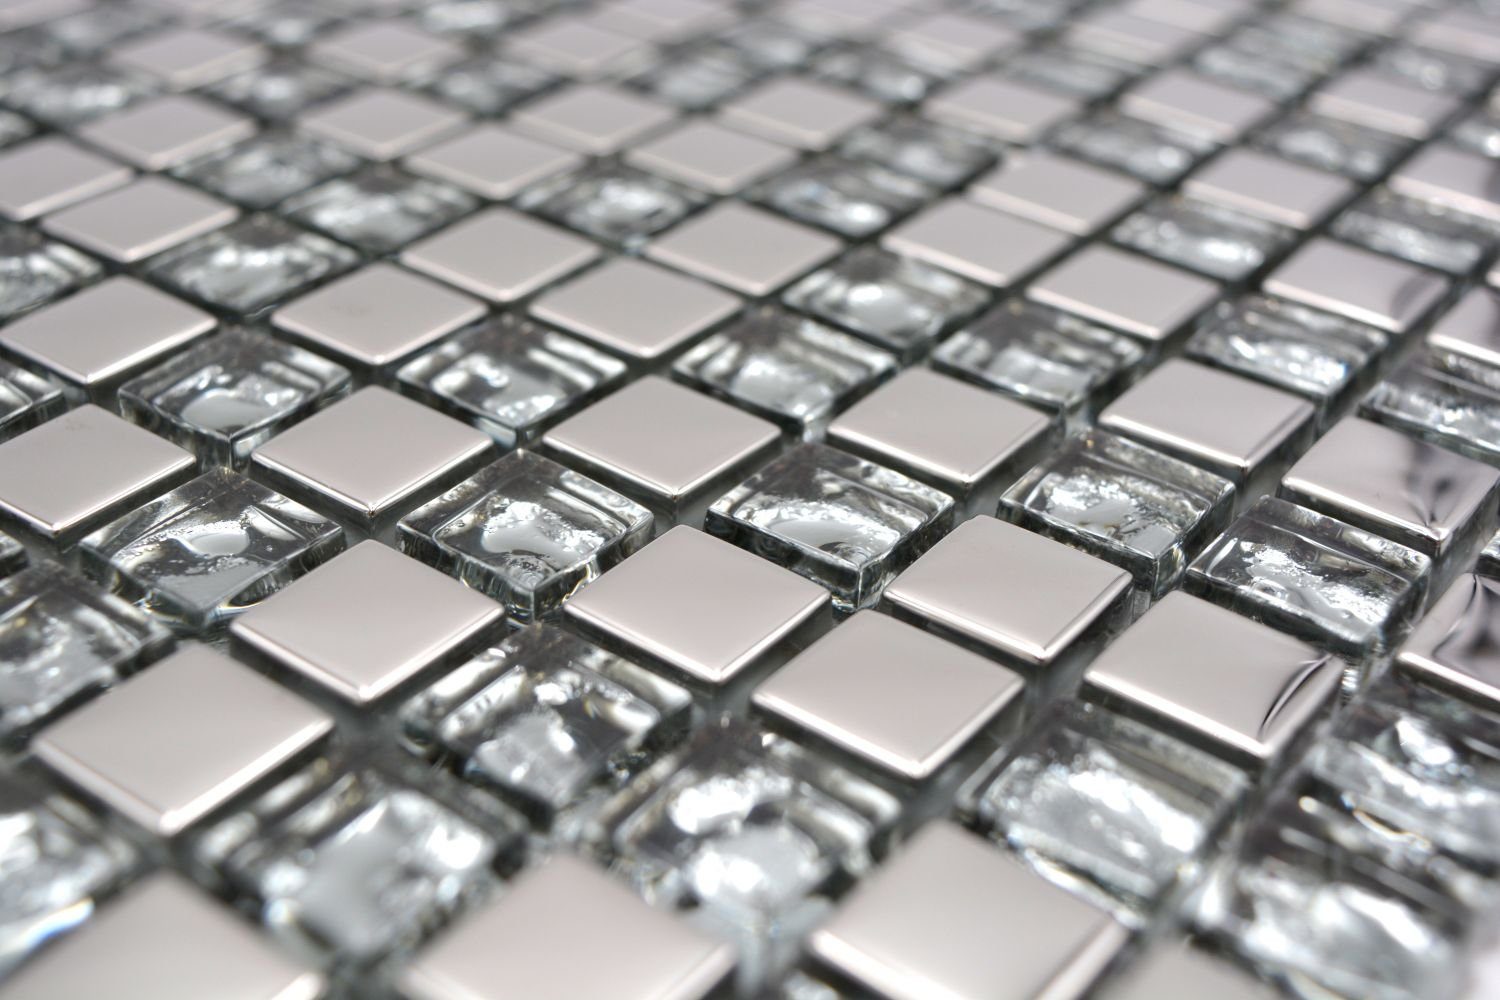 Mosani Mosaikfliesen Mosaikfliese Glasmosaik electroplated BAD Glas WC Silber Küche